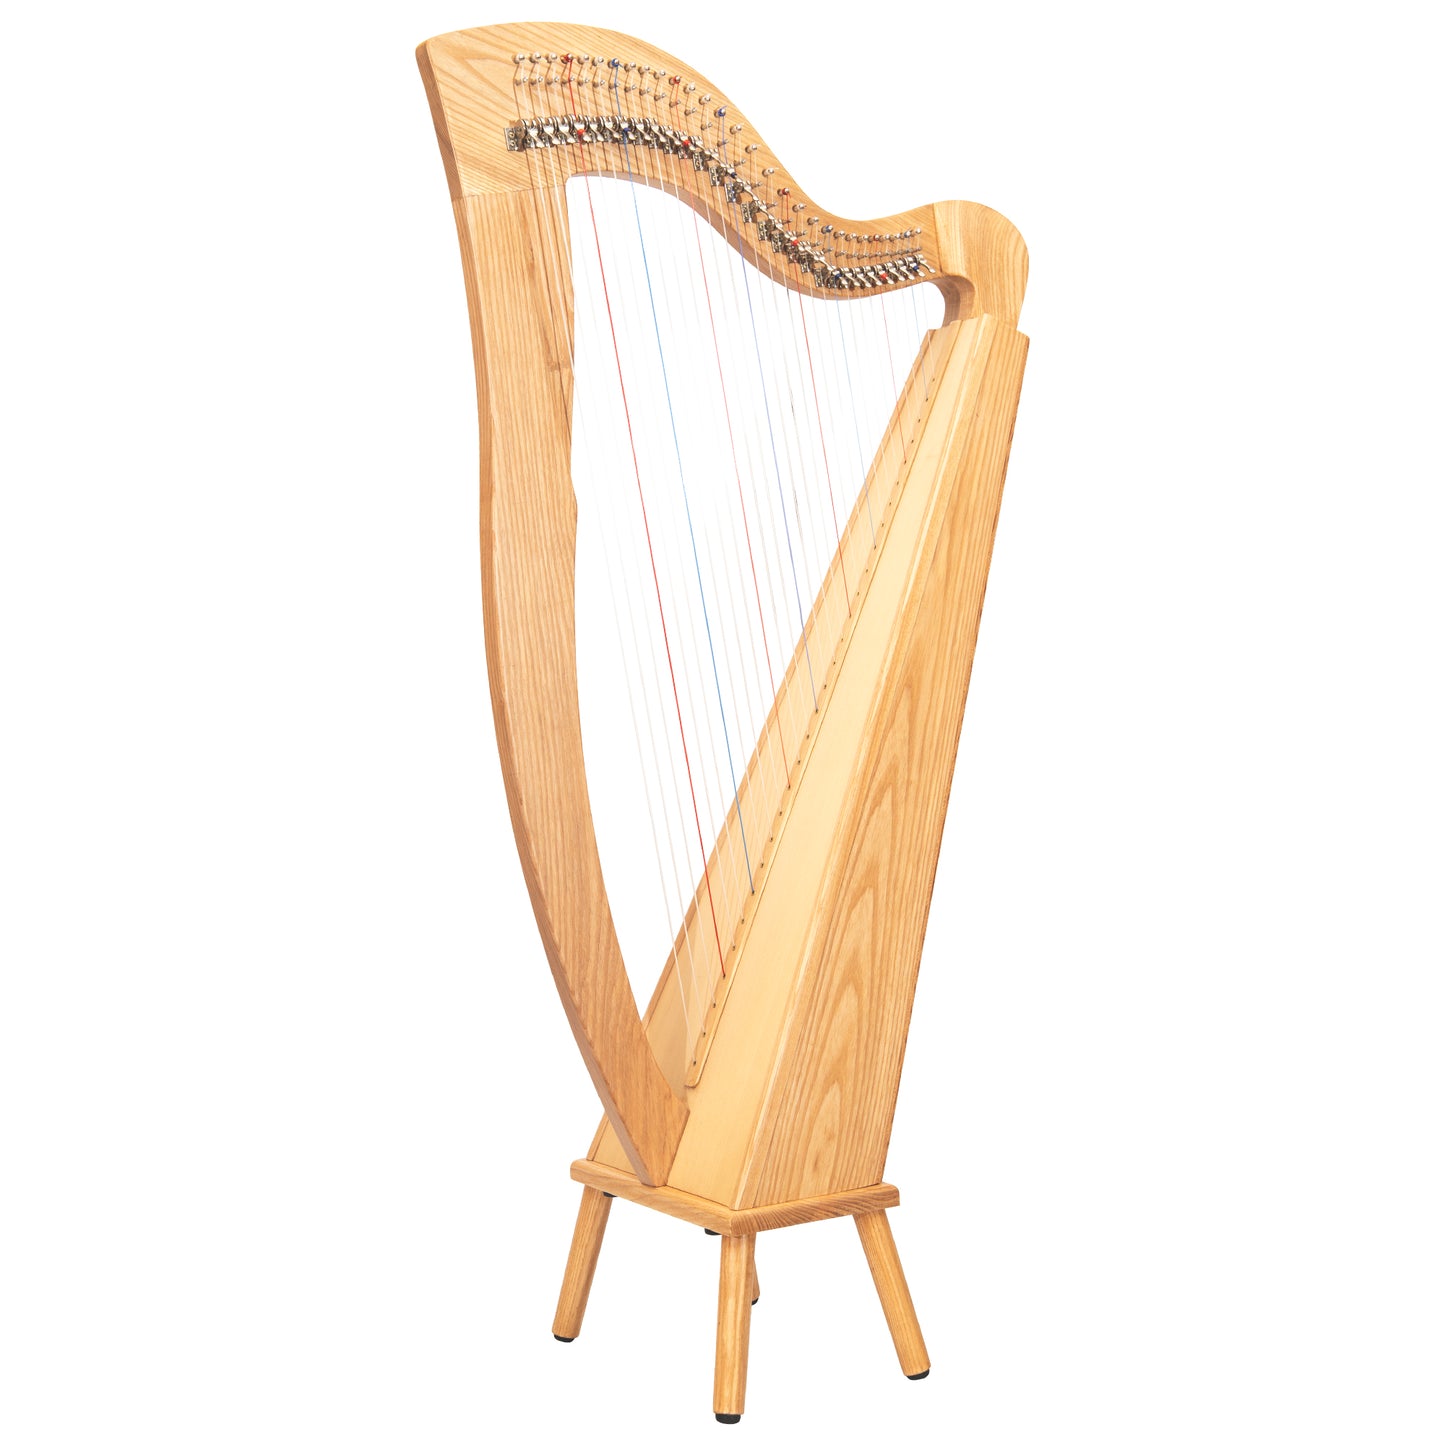 Mchugh Harp 29 Strings Ashwood Square Back